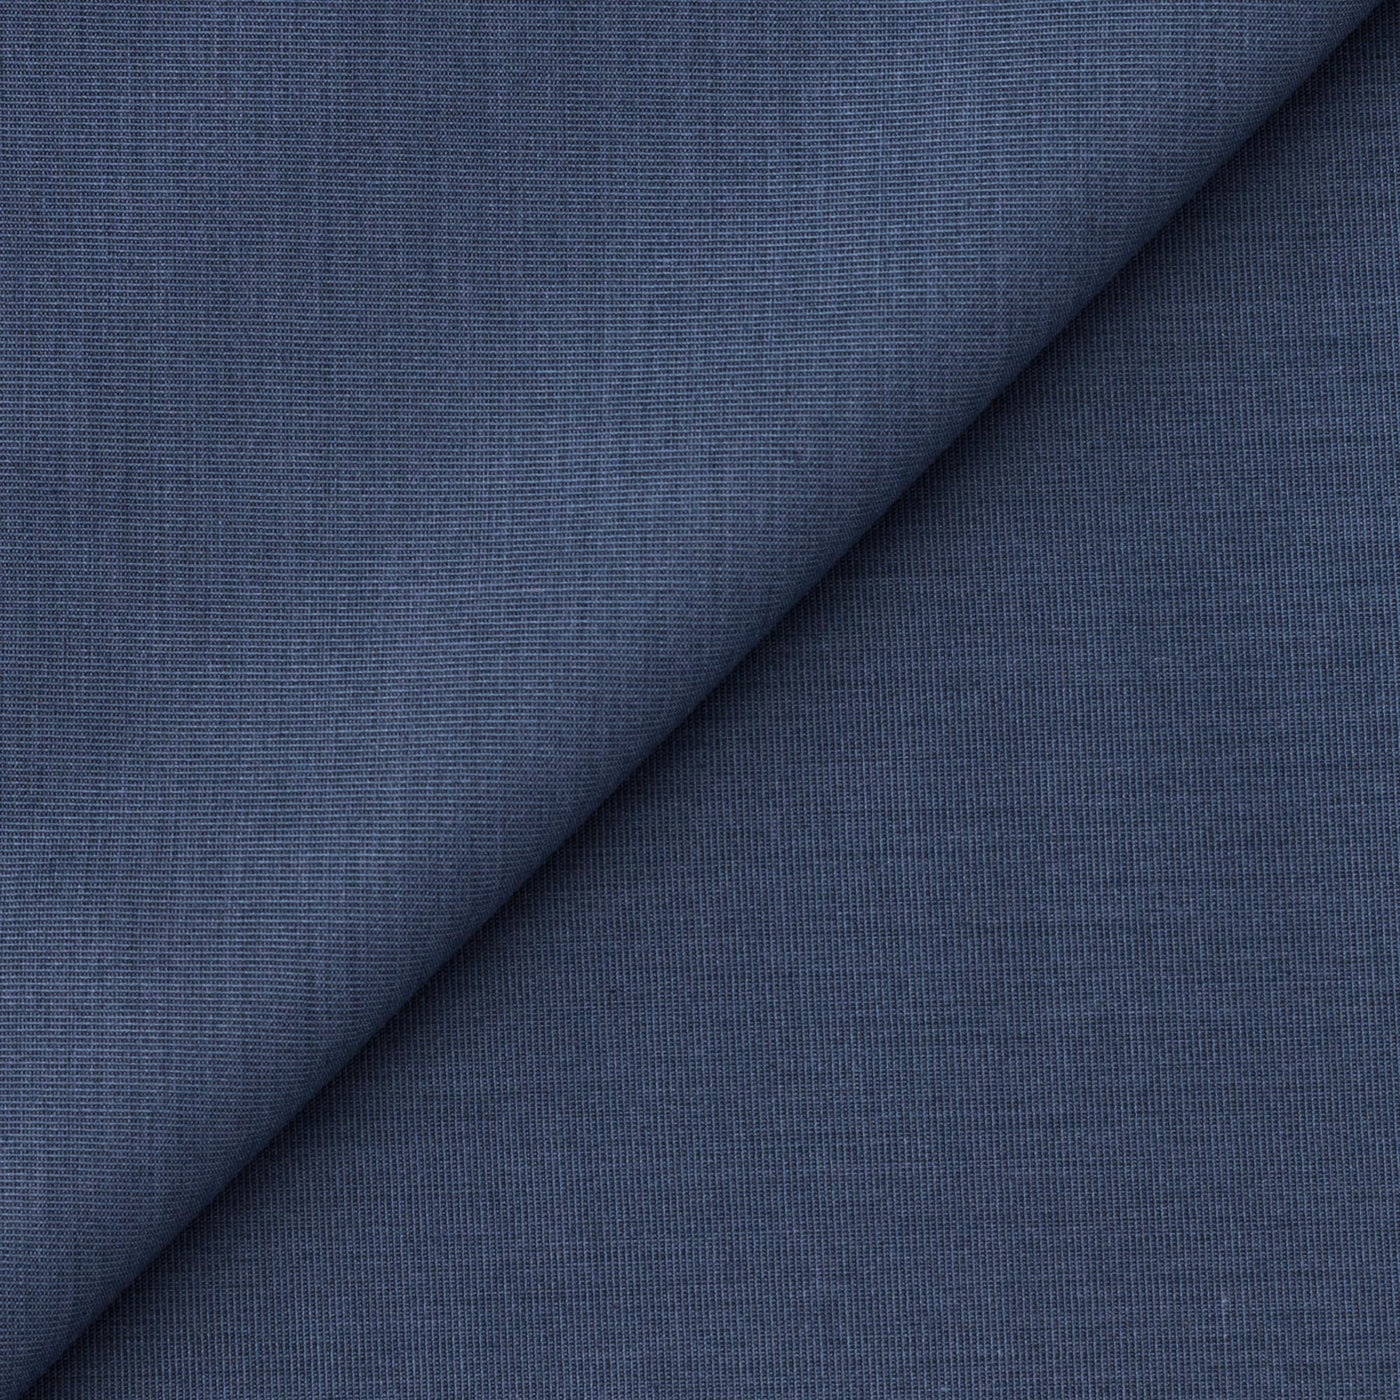 Fabric Pandit Cut Piece 0.50M (CUT PIECE) Steel Blue Textured Cotton Men's Shirt Fabric (Width 58 inch)